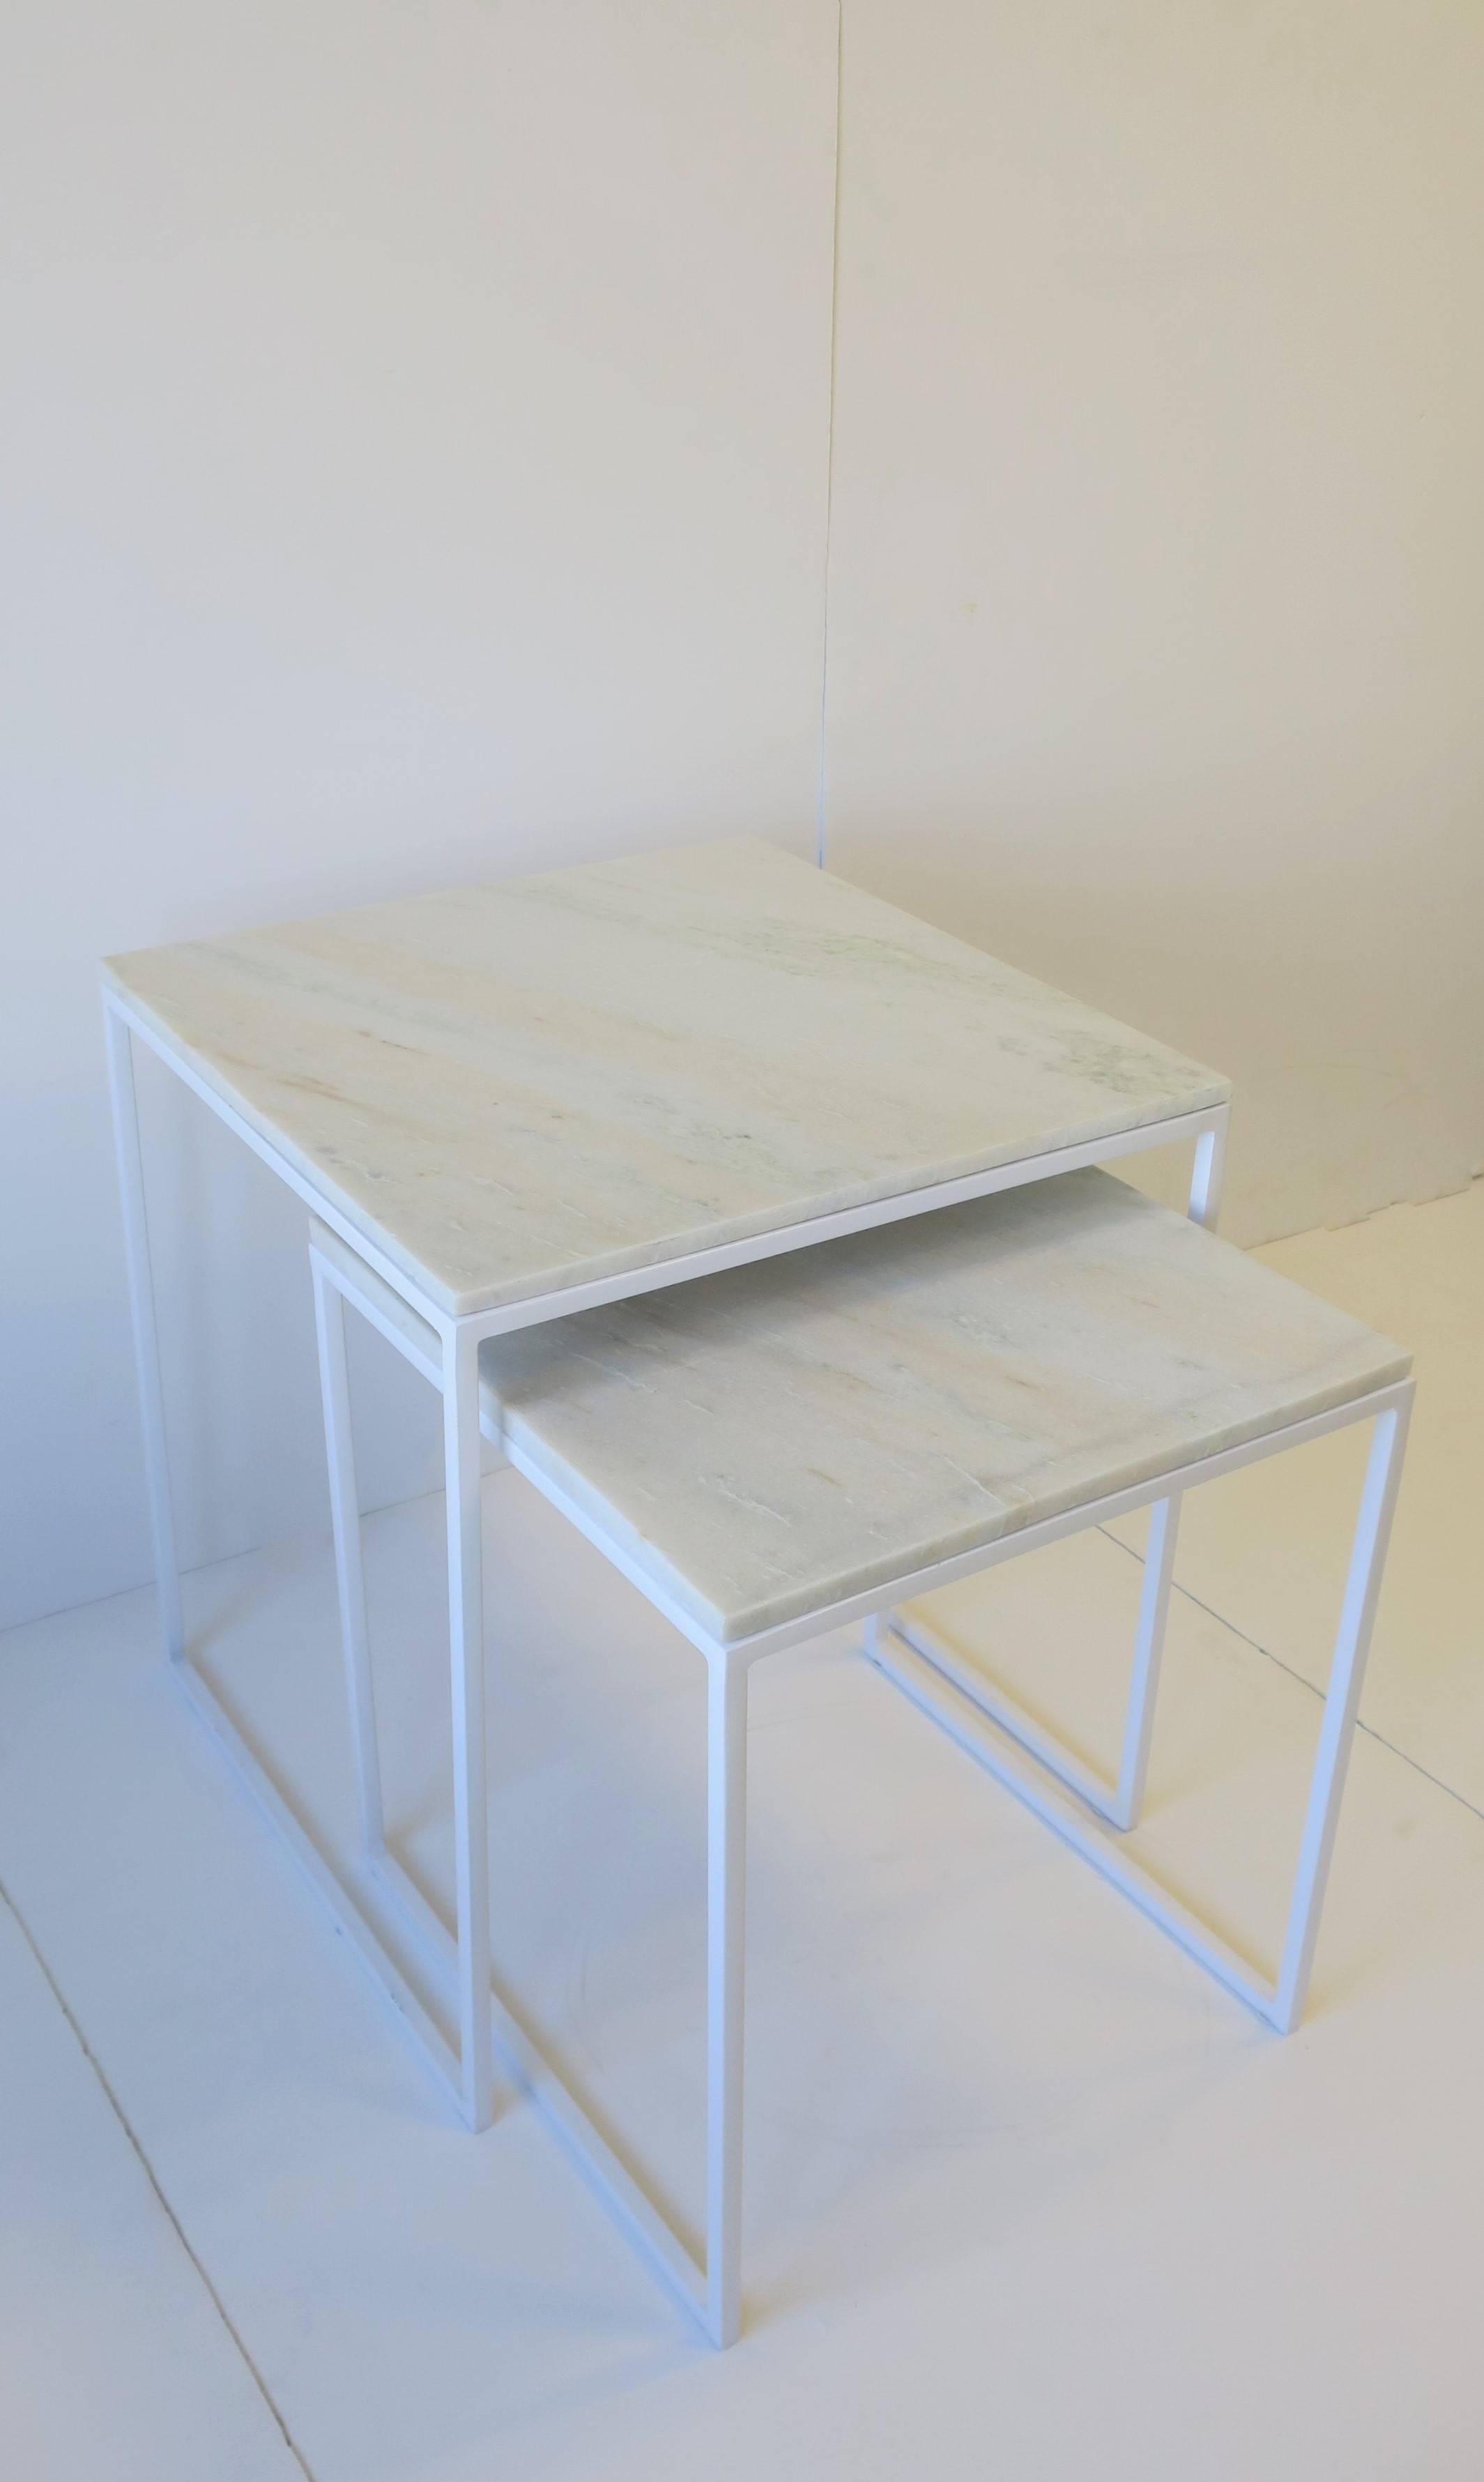 Un ensemble/paire de tables gigognes ou de tables d'appoint en marbre blanc granité de style moderne ou minimaliste. Le marbre granit est blanc avec de légères traces de gris et de tons chair, comme le montrent les images. La base est un blanc